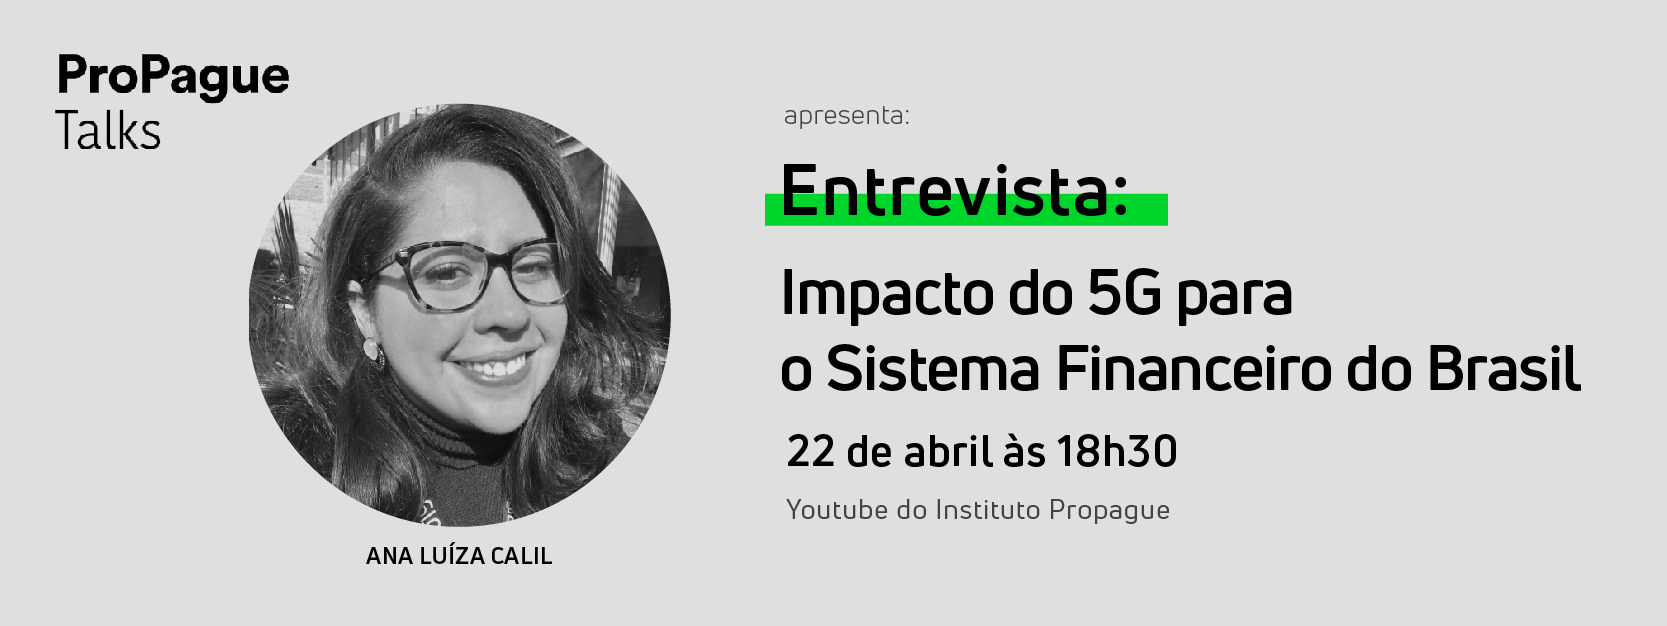 Entrevista: Impacto do 5G para o Sistema Financeiro no Brasil